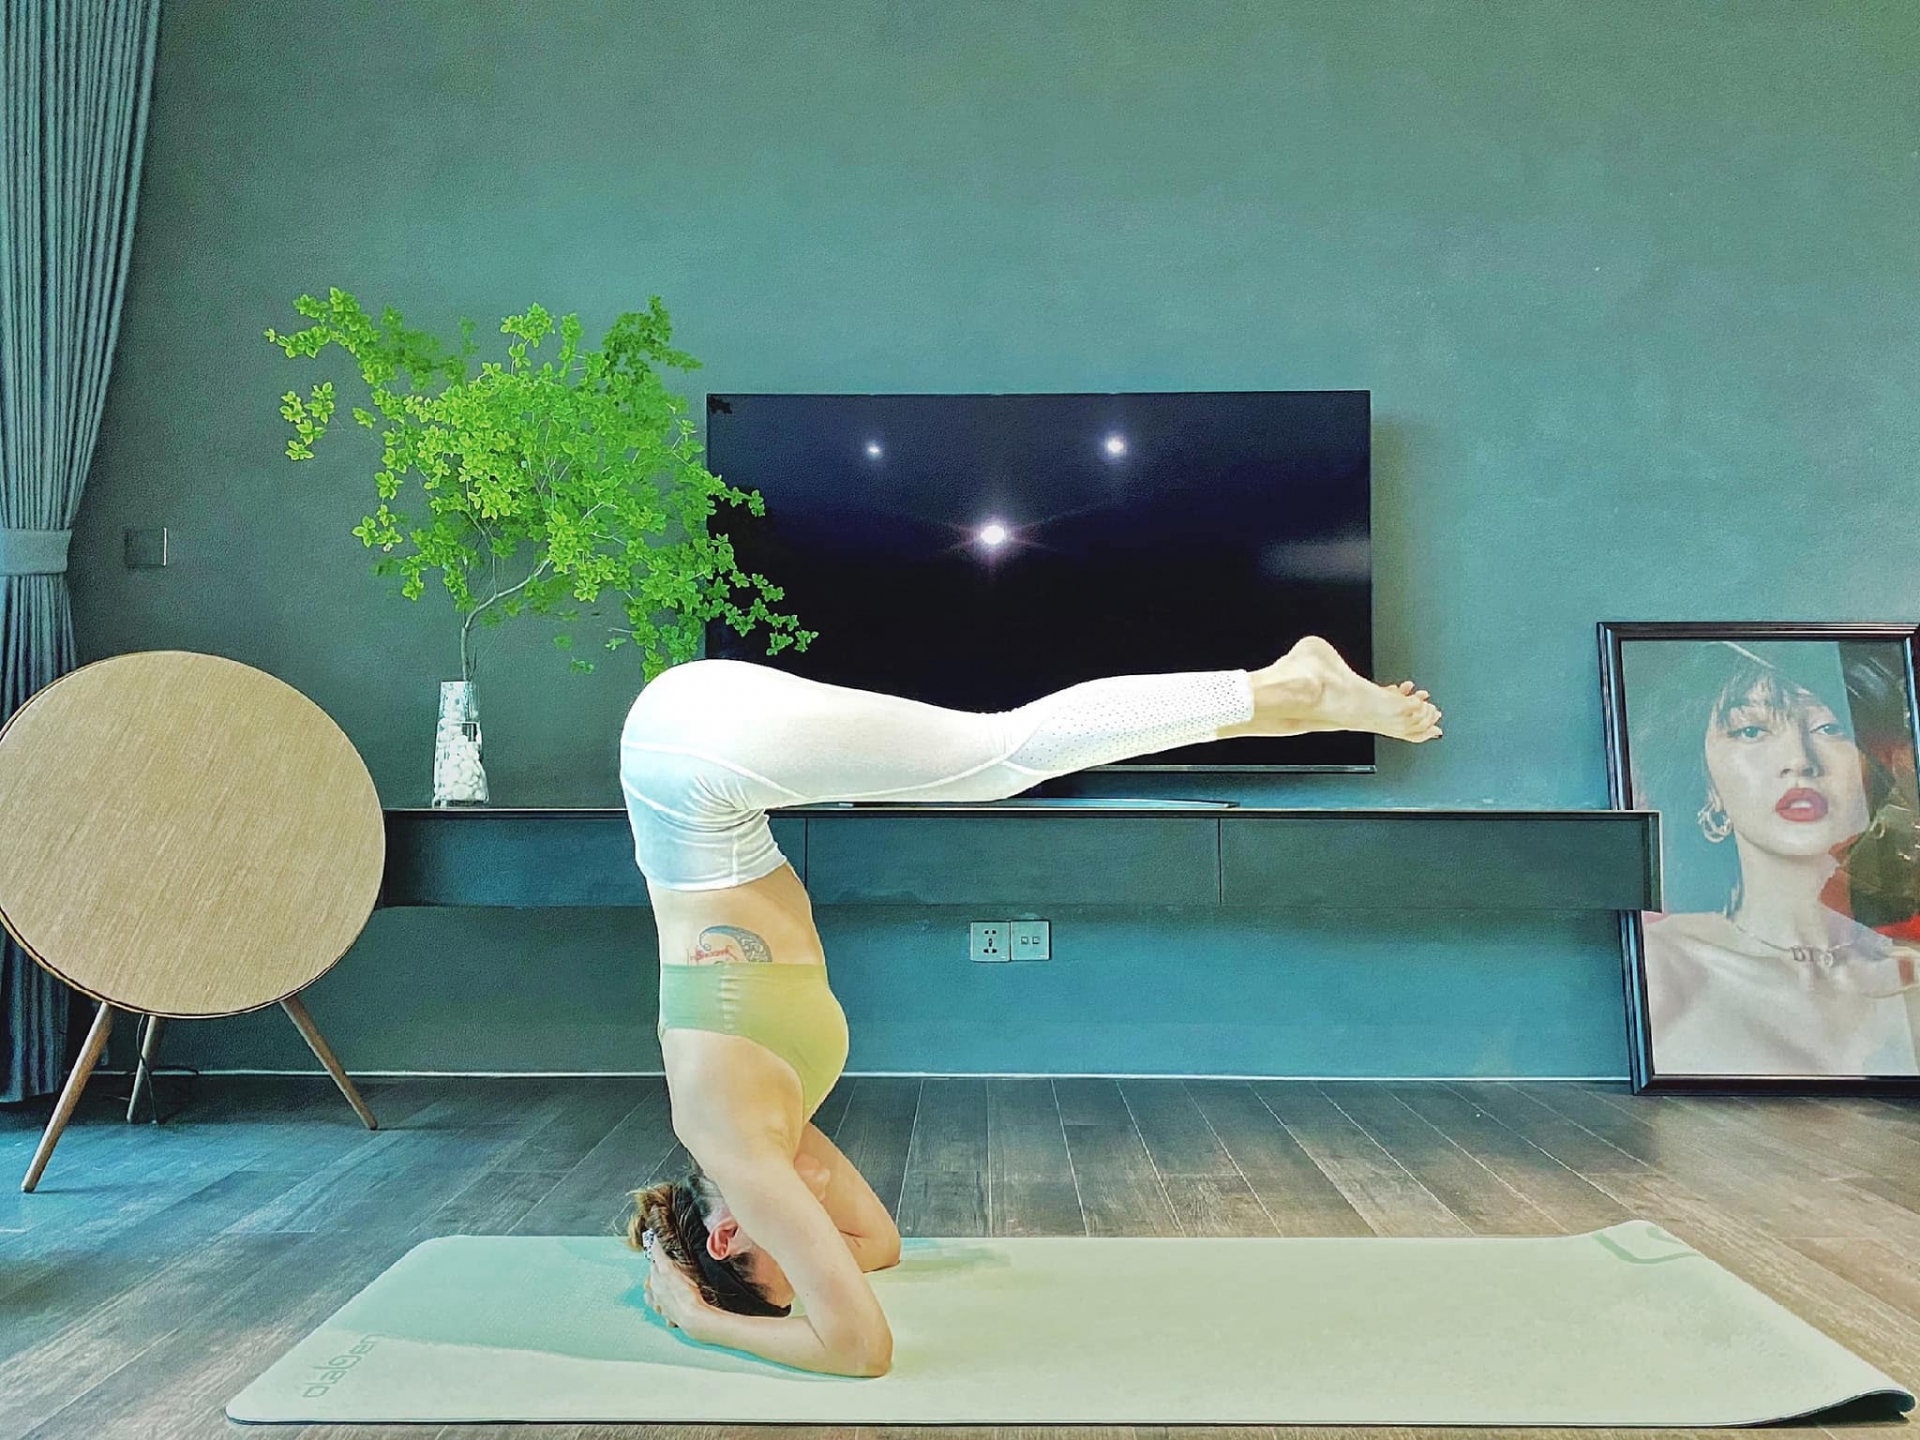 Bảo Anh chăm chỉ tập yoga để giữ sức khỏe và vóc dáng. Trong ảnh, cô thành thục thực hiện động tác trồng cây chuối, khép chân 90 độ yêu cầu sự khỏe khoắn của đôi tay và thăng bằng của cả cơ thể.